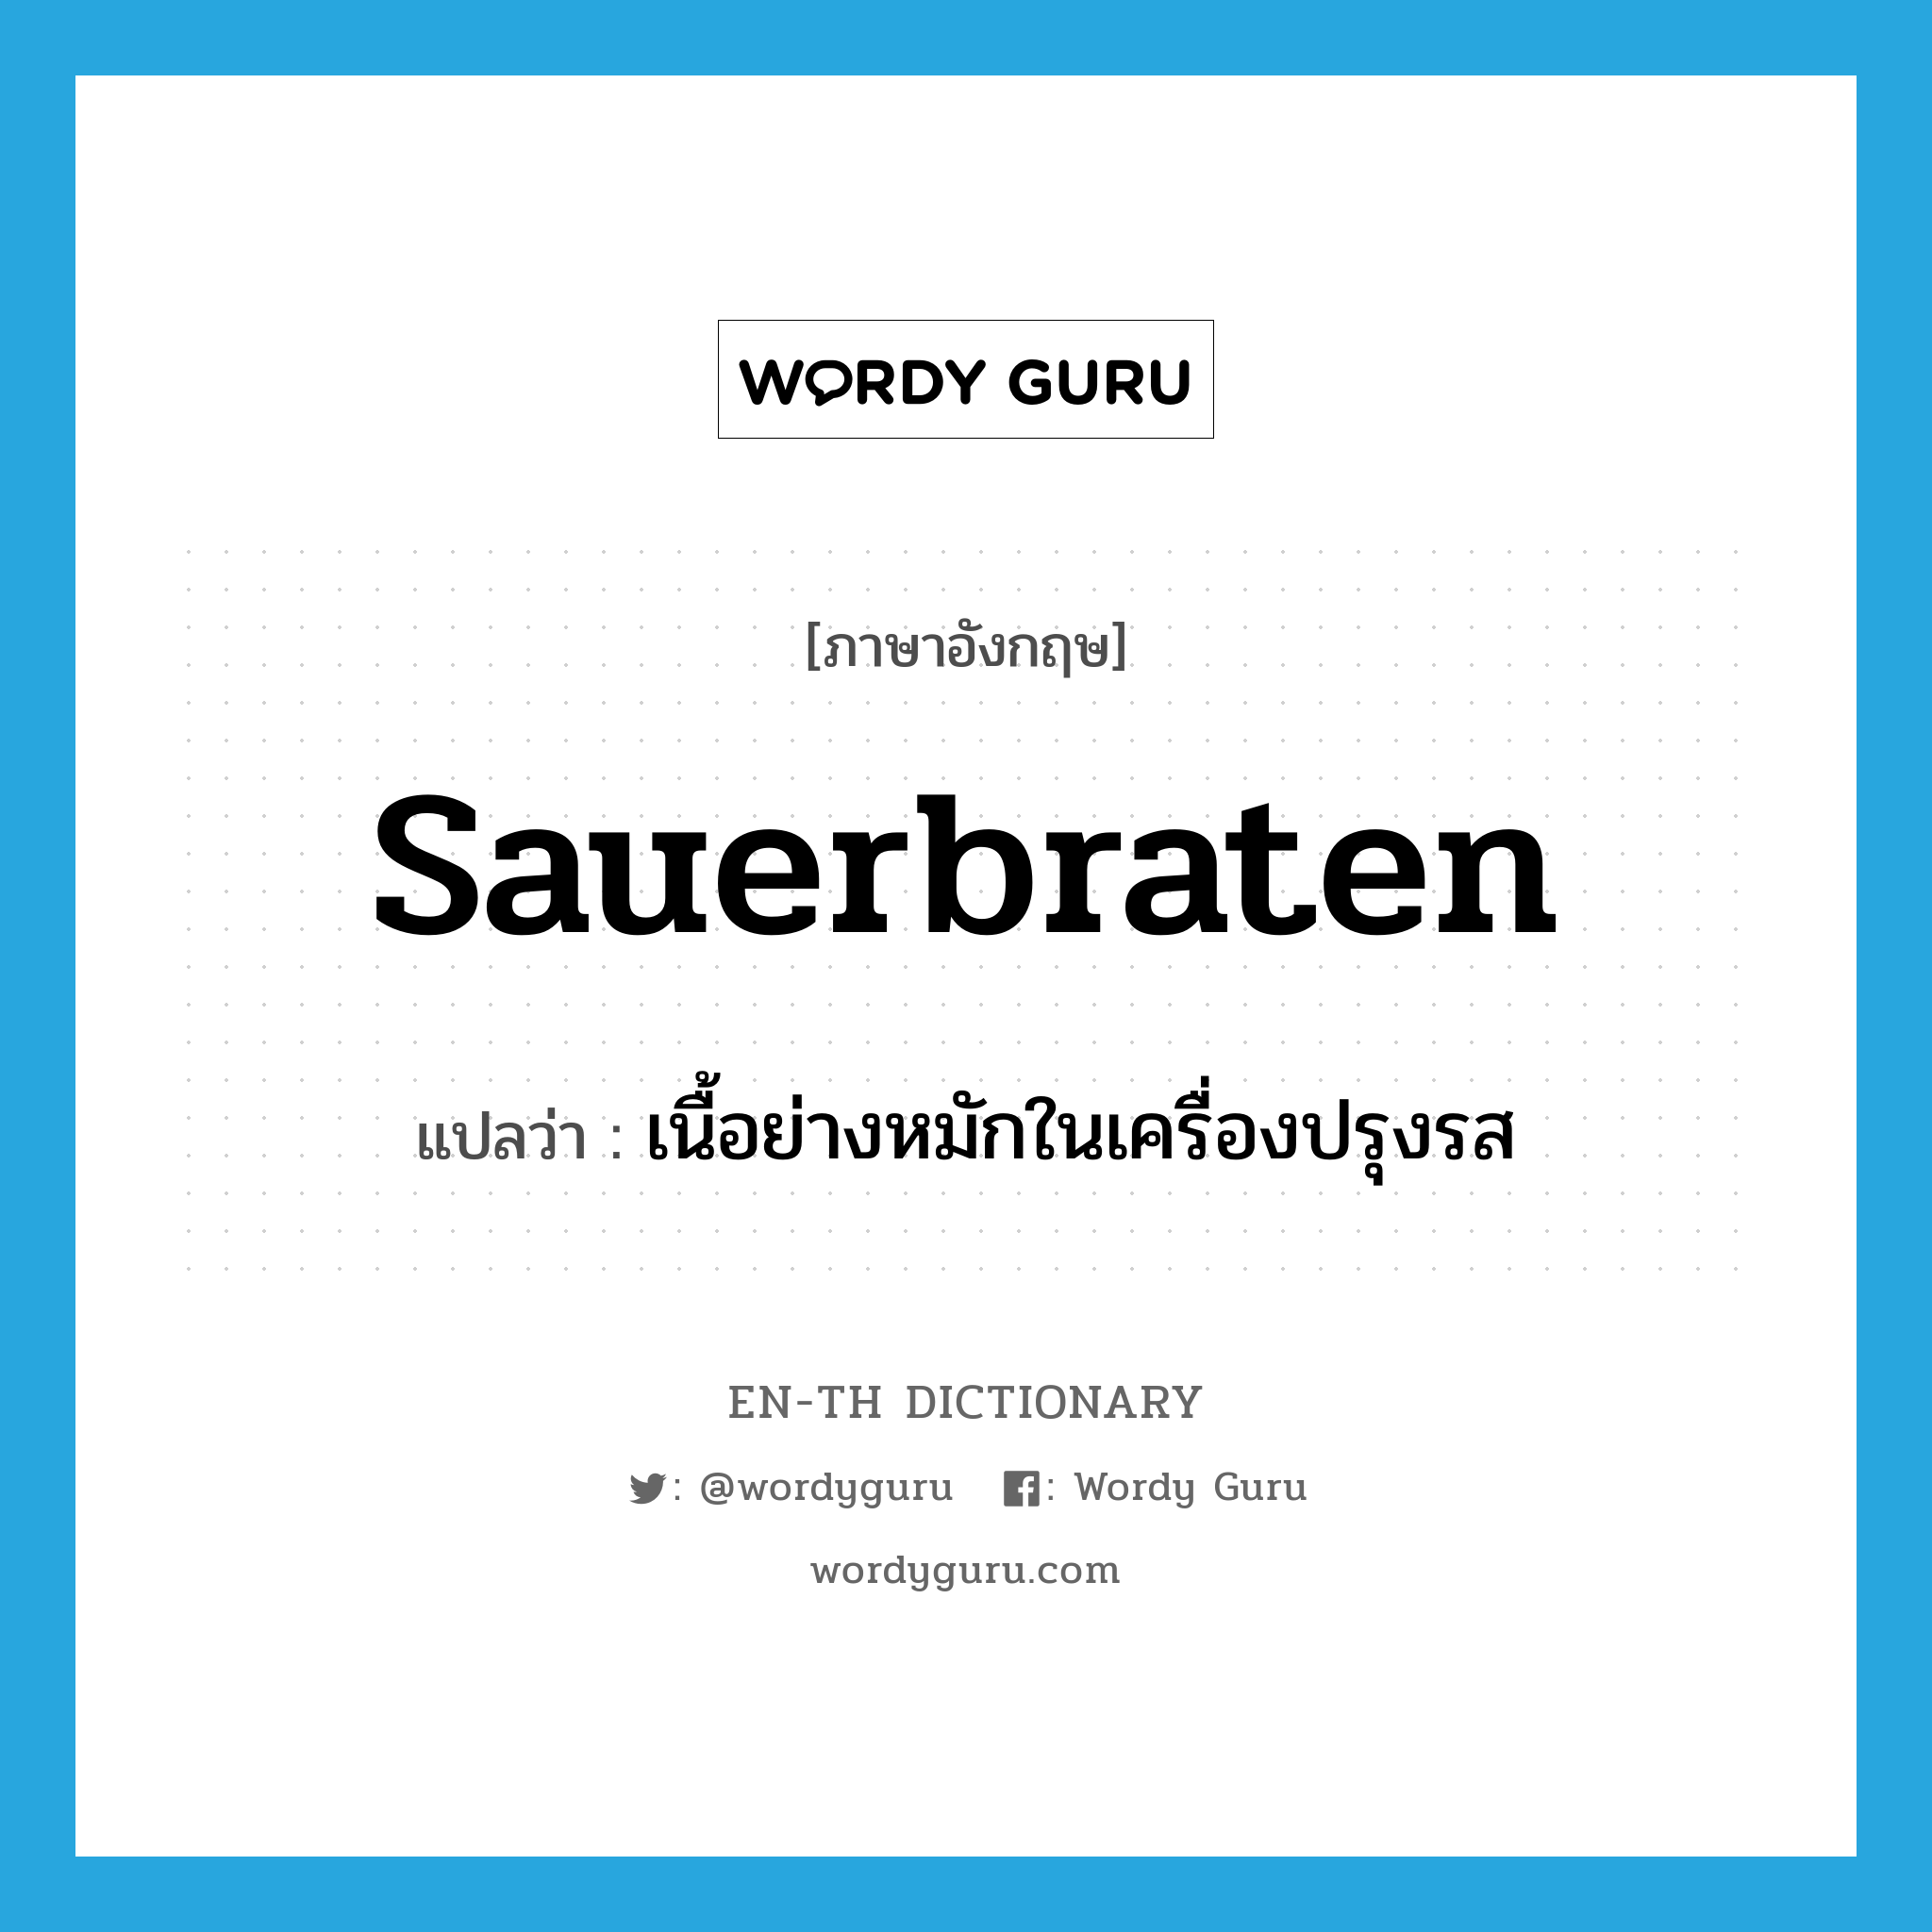 sauerbraten แปลว่า?, คำศัพท์ภาษาอังกฤษ sauerbraten แปลว่า เนื้อย่างหมักในเครื่องปรุงรส ประเภท N หมวด N